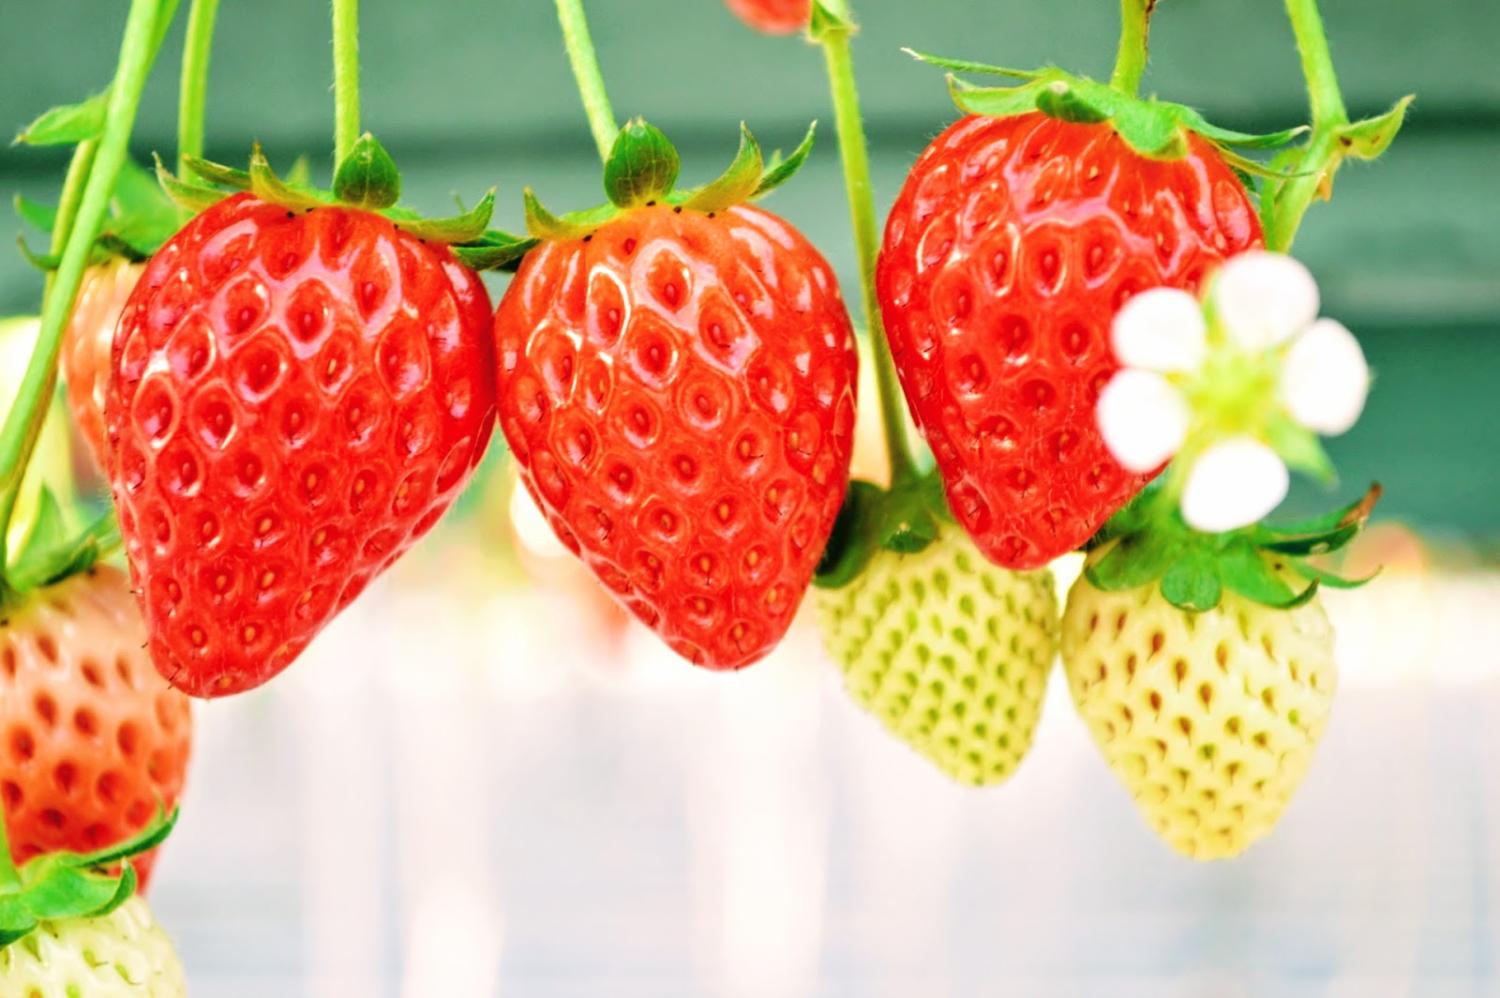 Young's Holidays 【田園草莓之味】福岡Berry Field草莓60分鐘任食體驗 3